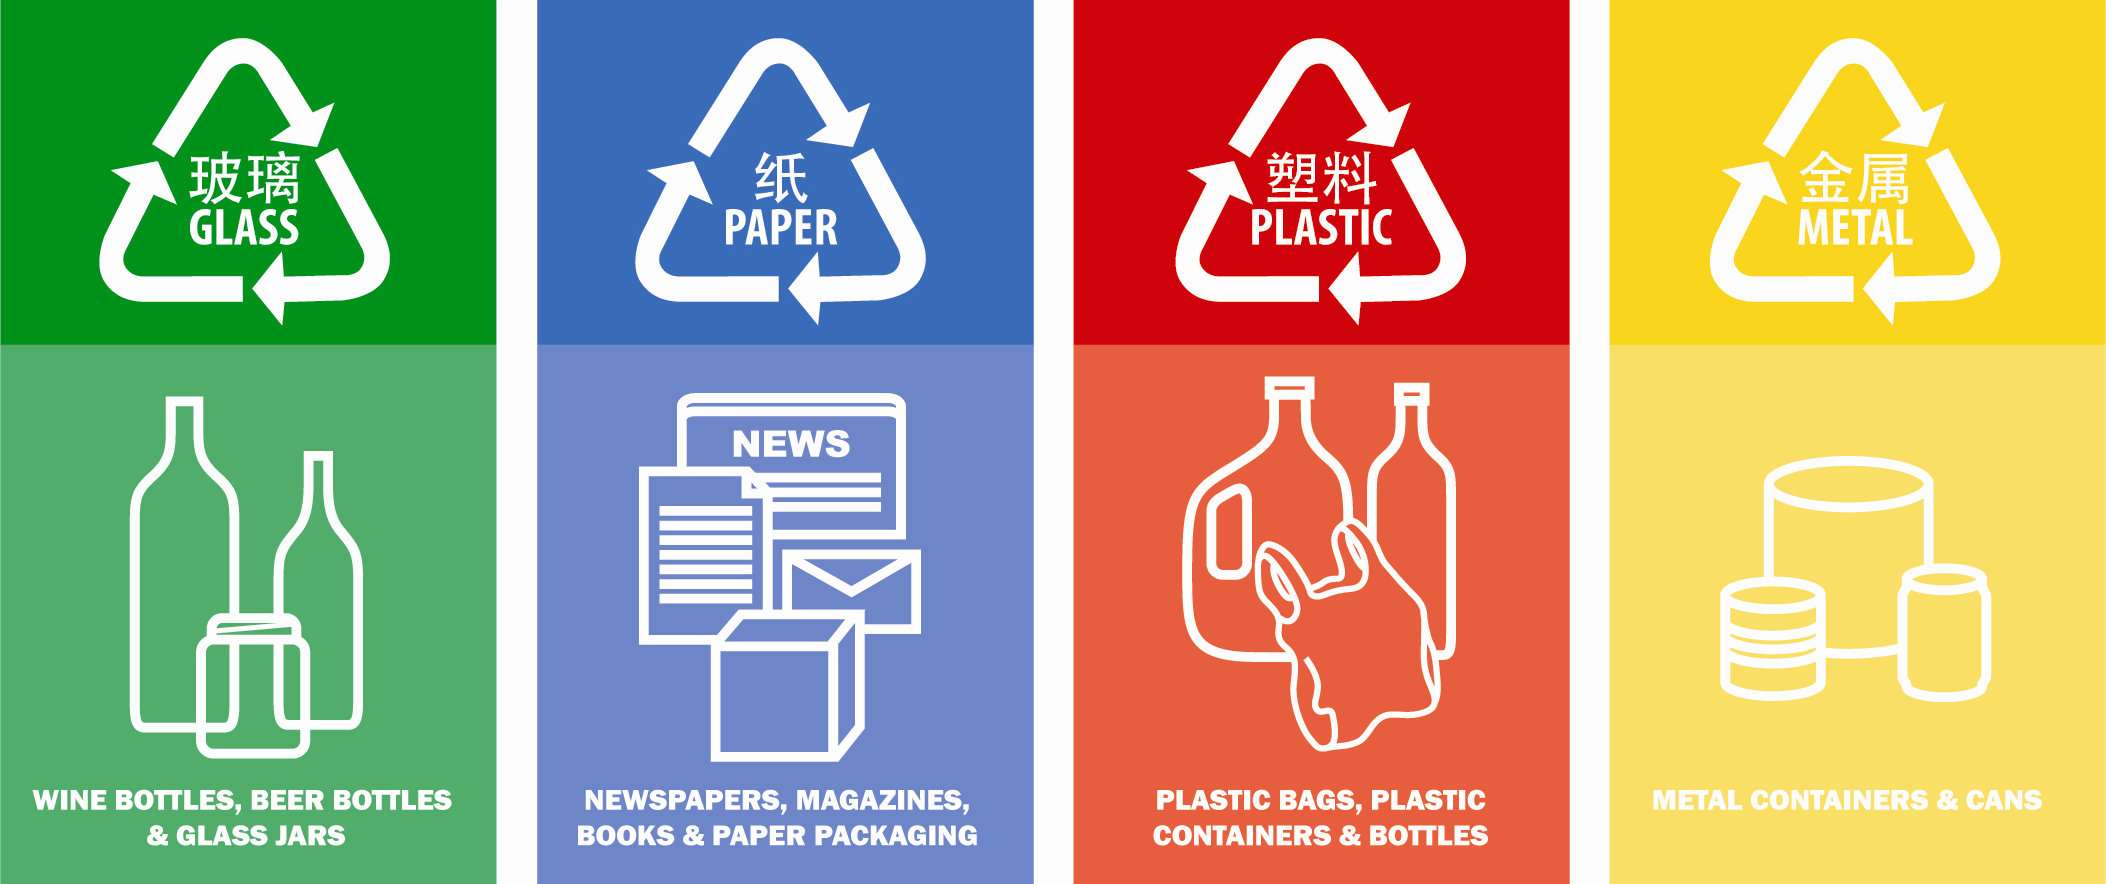 See which waste bin to use | R.H International Kitchen Blog